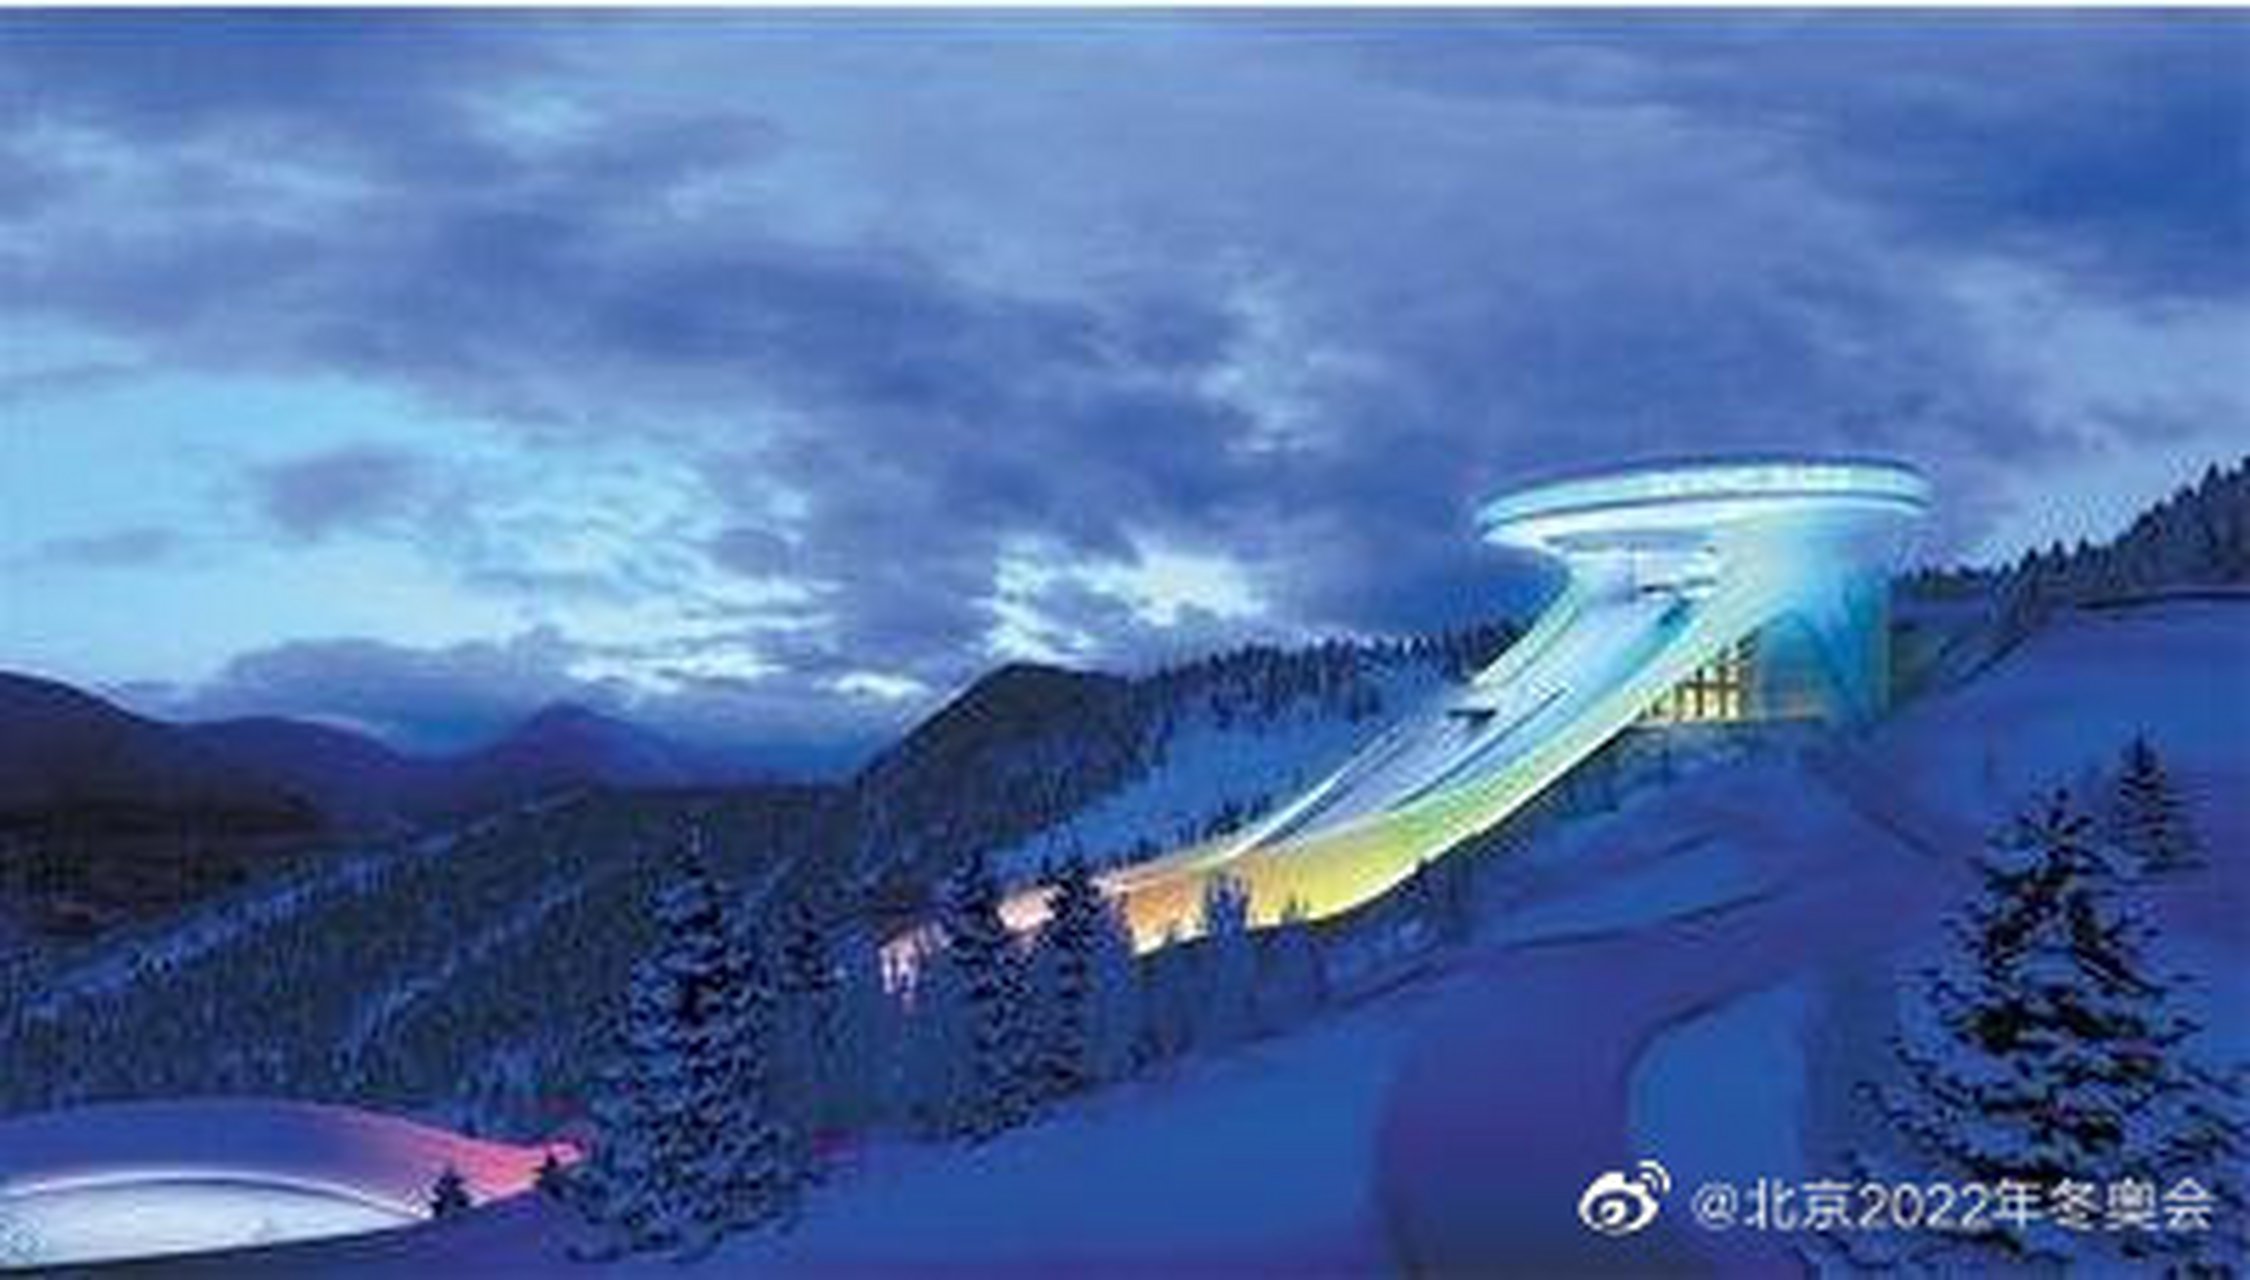 巍巍青山间,国家跳台滑雪中心"雪如意"造型精巧,气势雄伟.